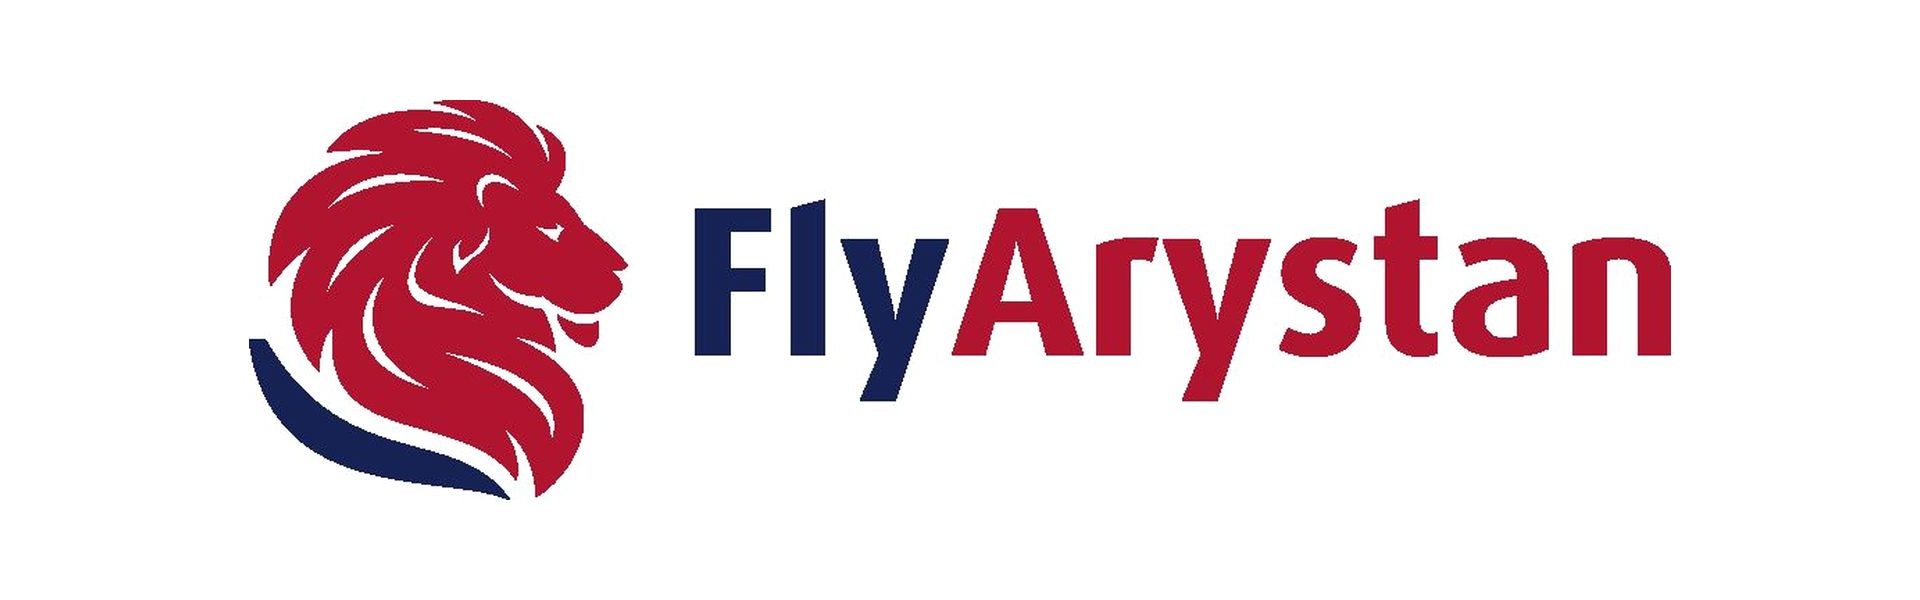 FlyArystan-logo.jpg 